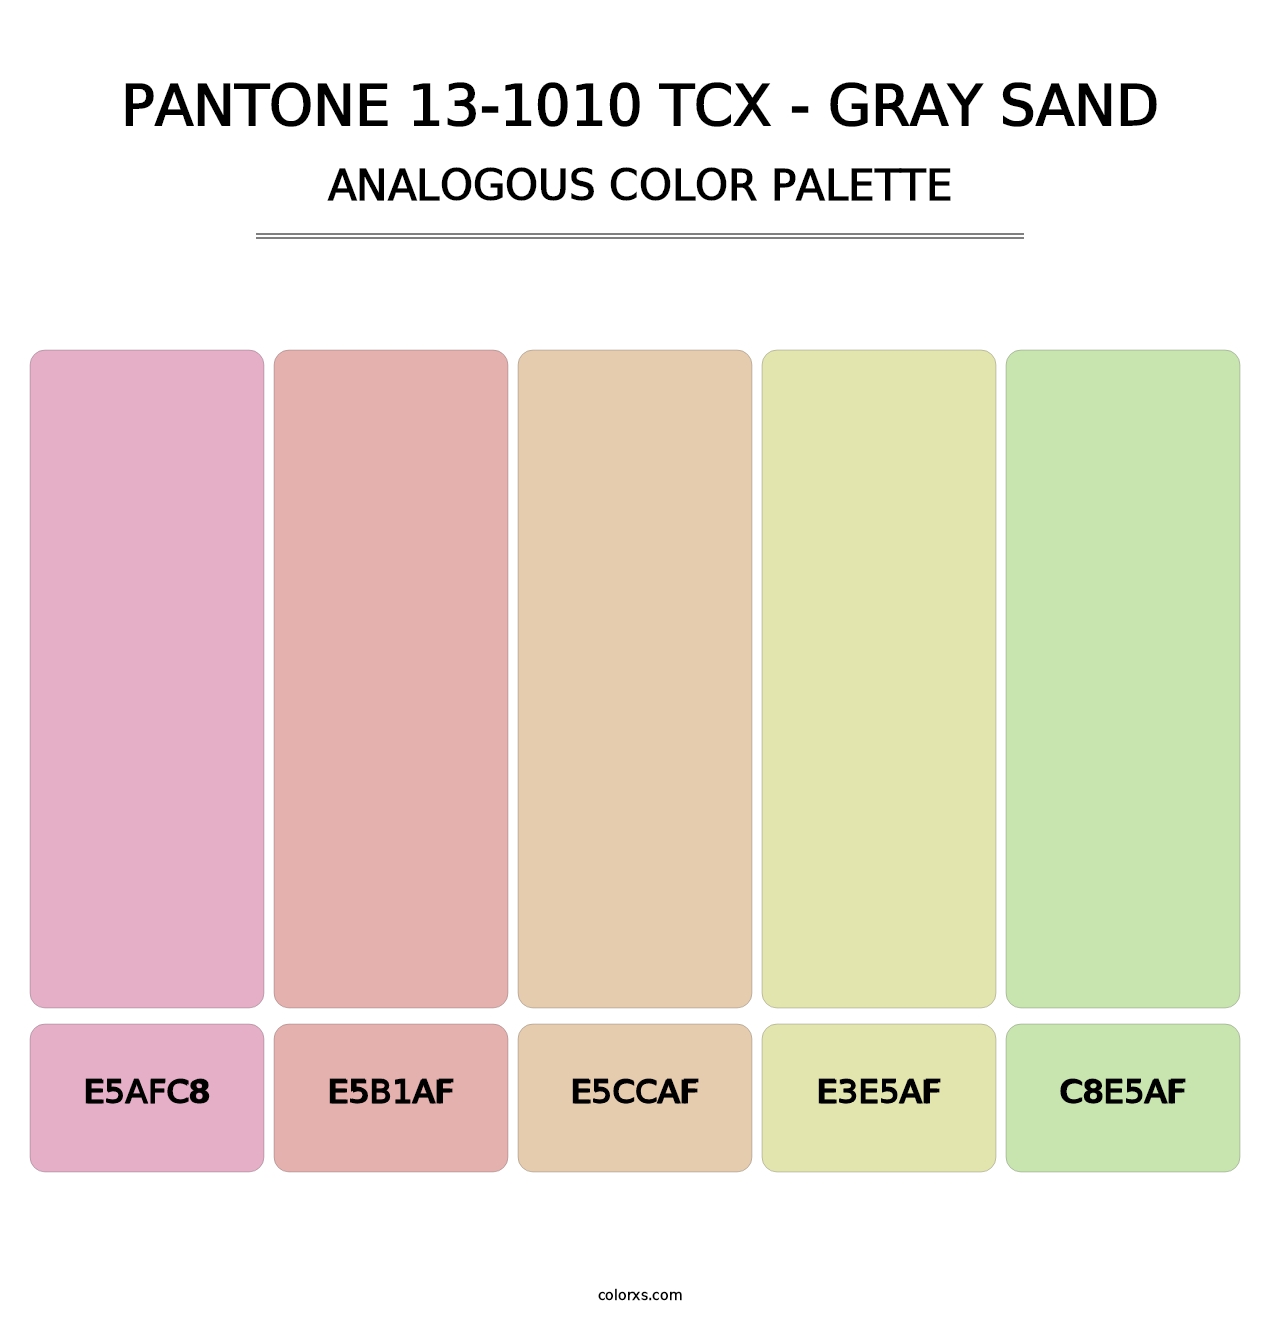 PANTONE 13-1010 TCX - Gray Sand - Analogous Color Palette